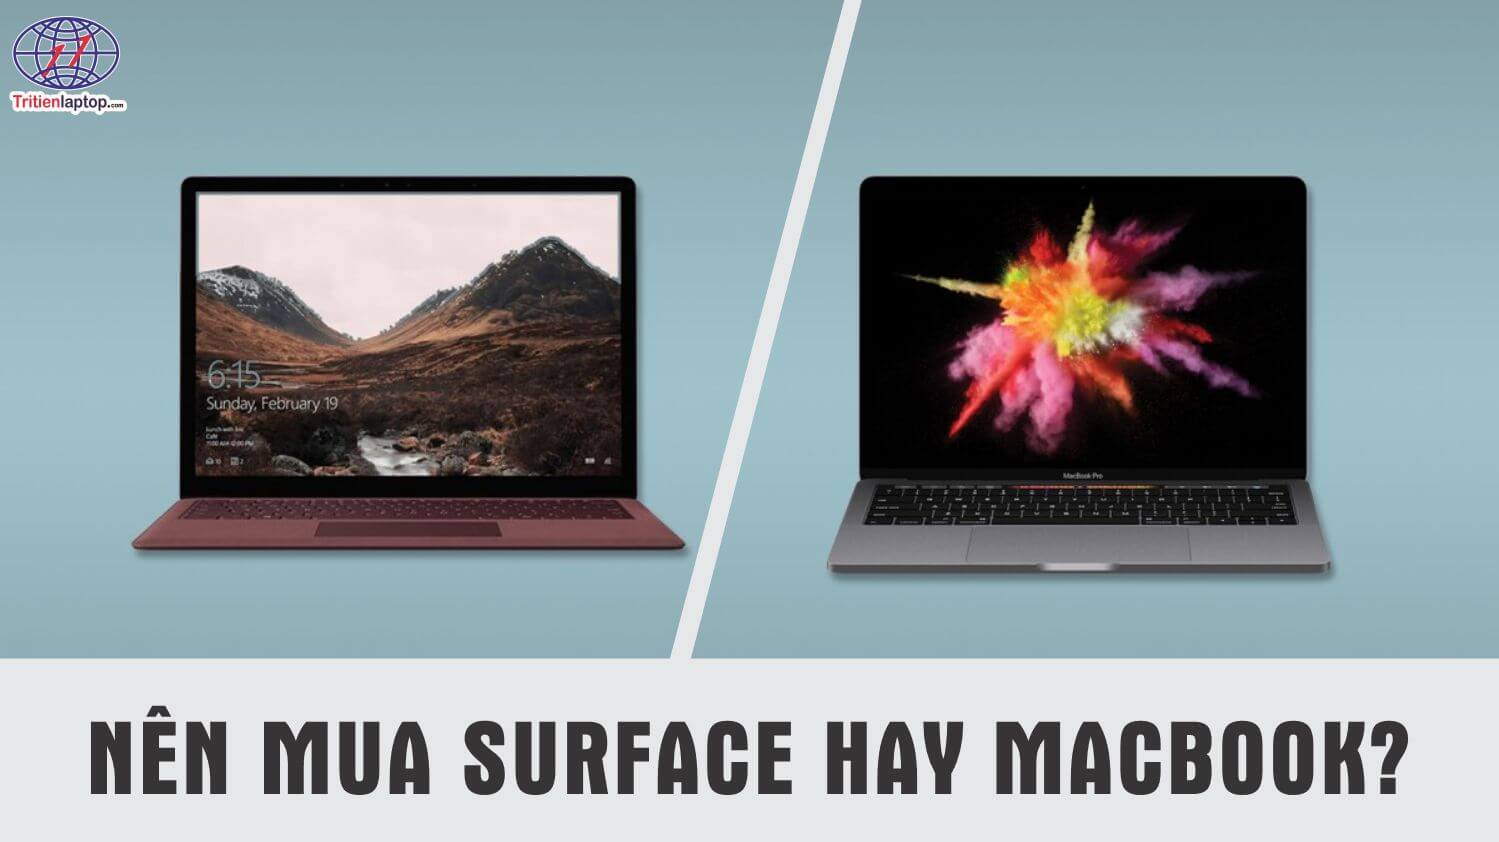 Nên mua Surface hay Macbook? Đâu là lựa chọn phù hơp cho ban?